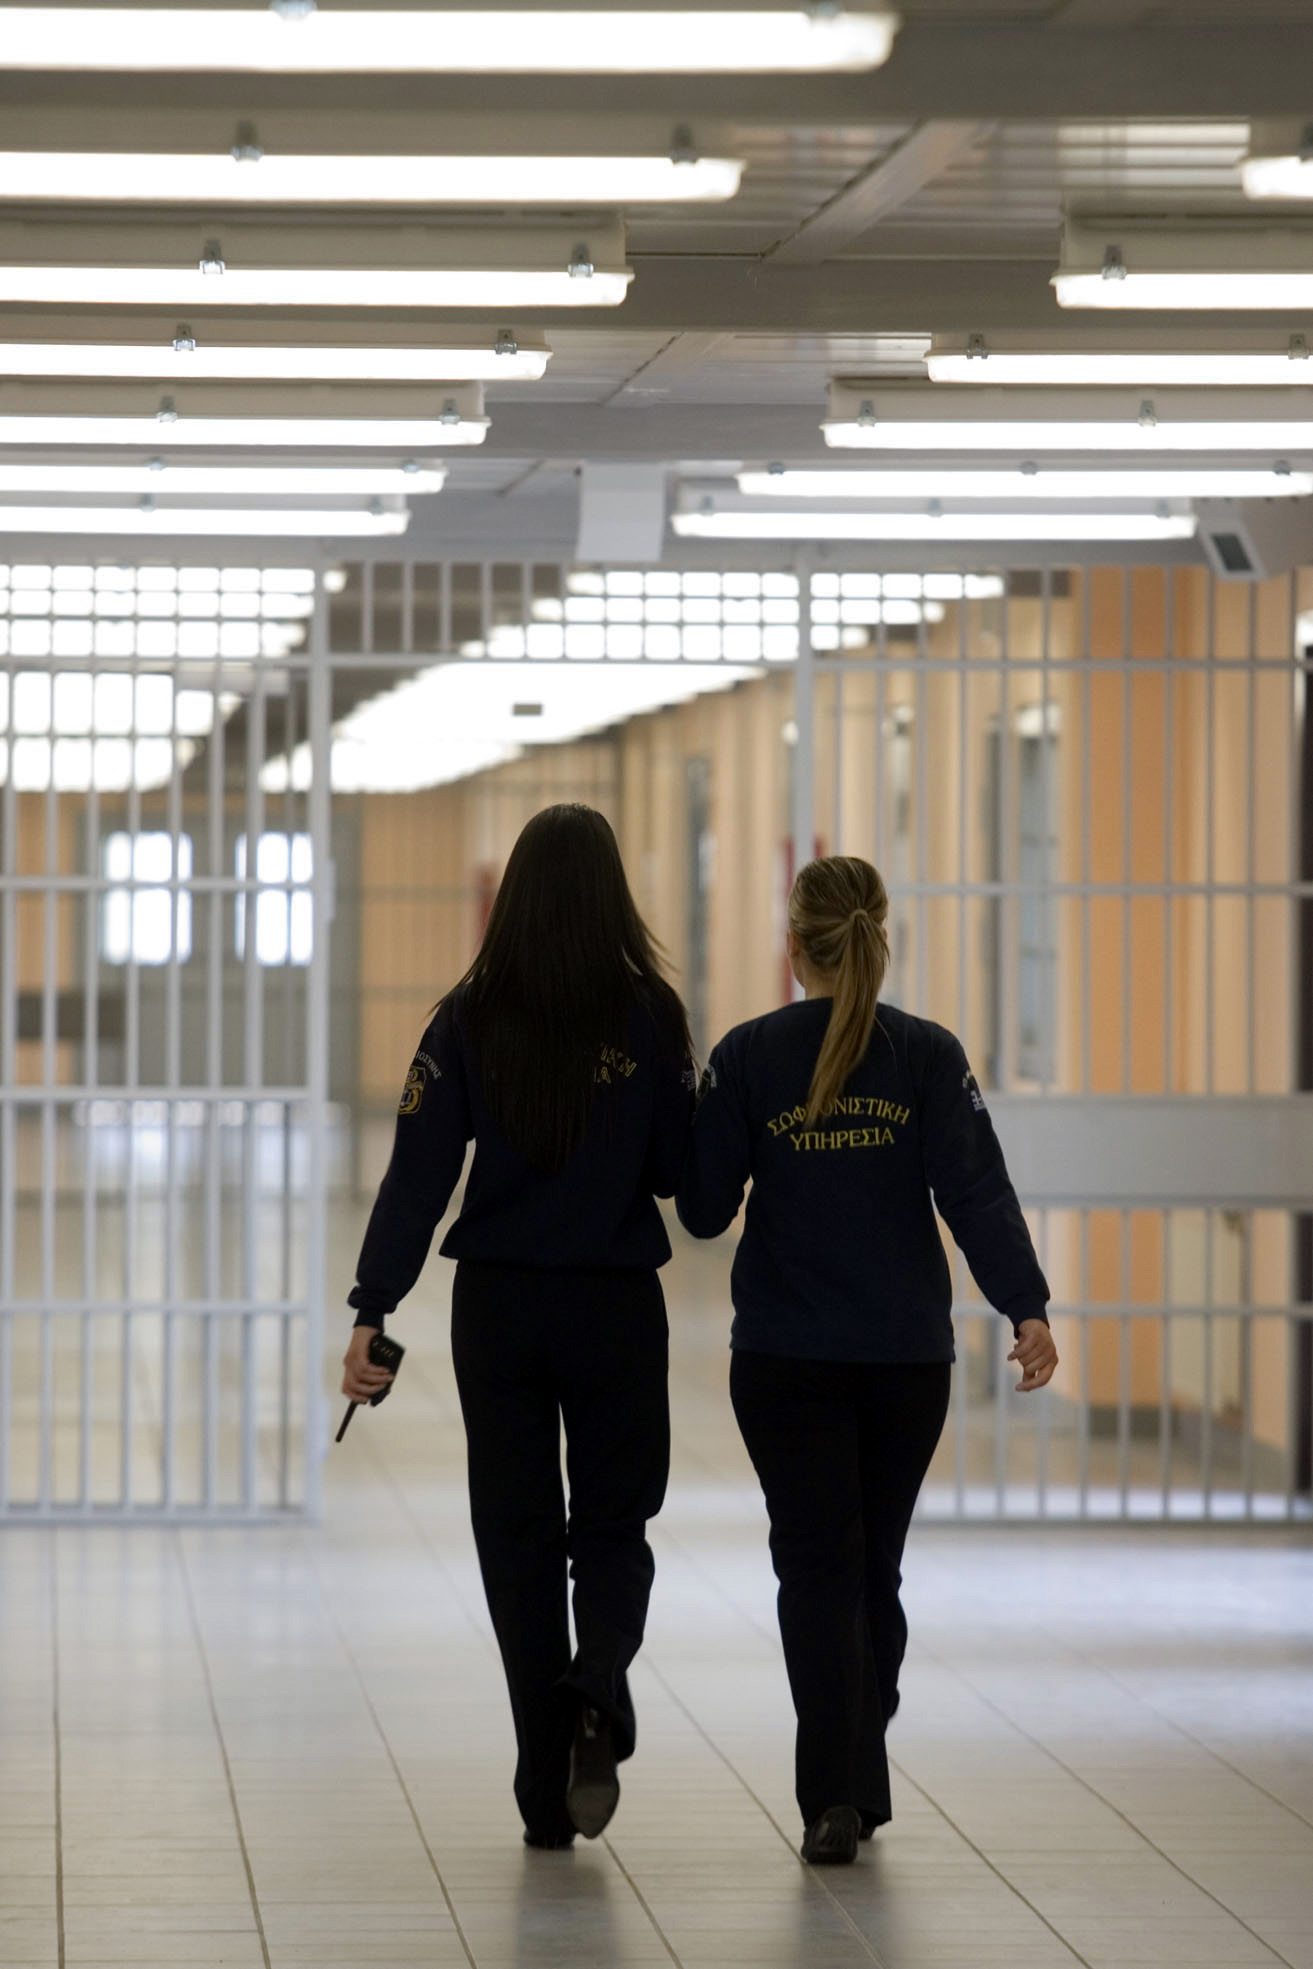 Οι γυναικείες φυλακές της Θήβας - ΦΩΤΟ EUROKINISSI